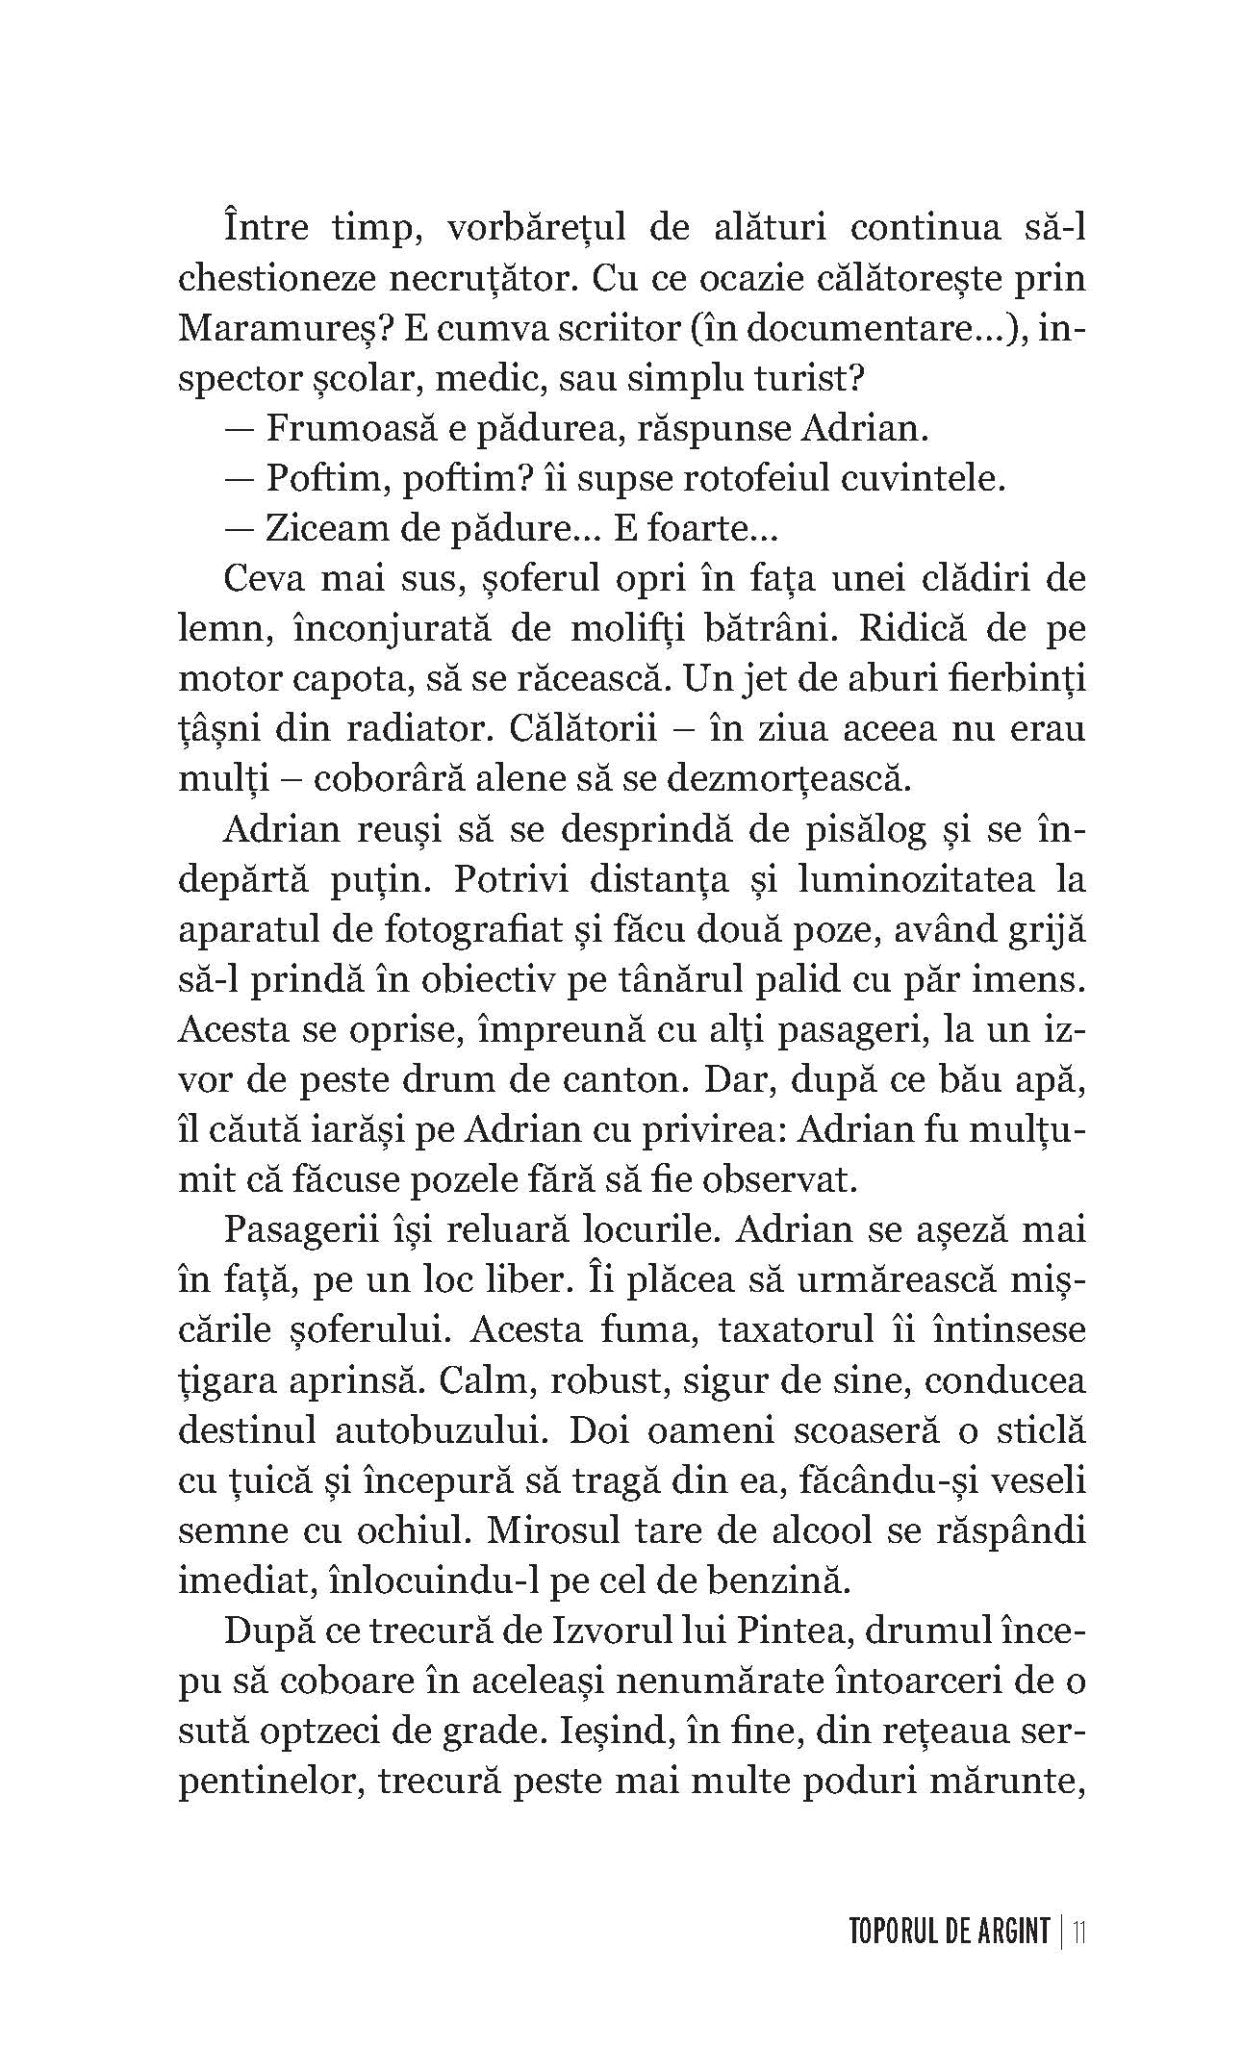 Moartea ca o floare de Nu-ma-uita + Toporul de argint - Ed. digitala - PDF - Publisol.ro